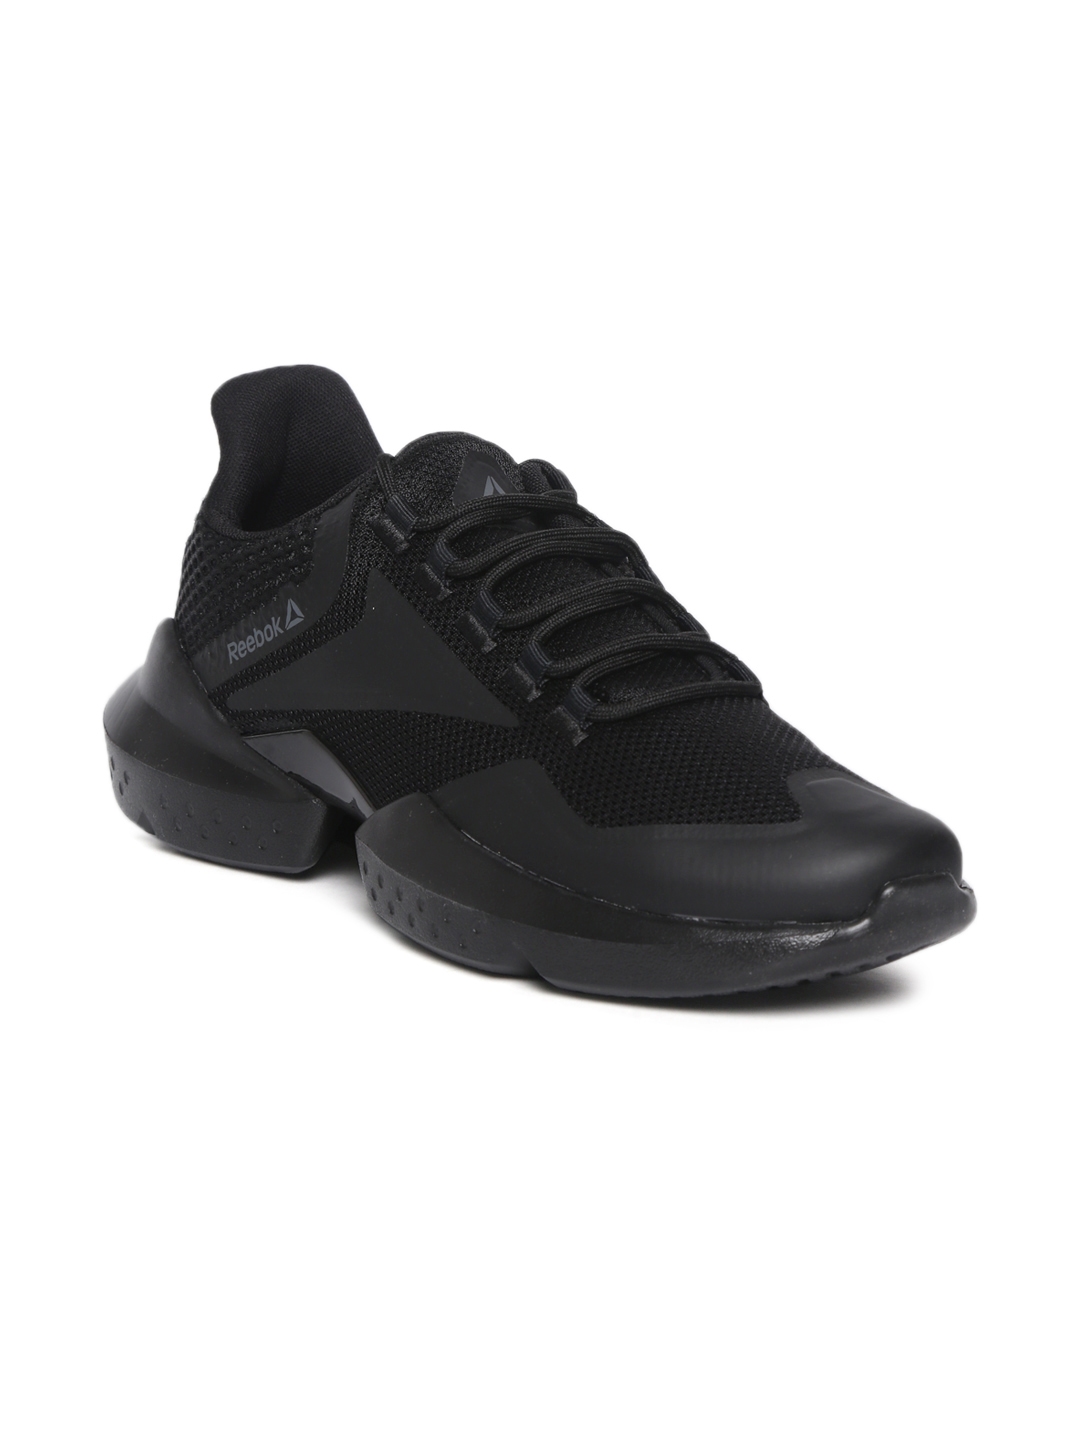 reebok 3d ultralite shoes price